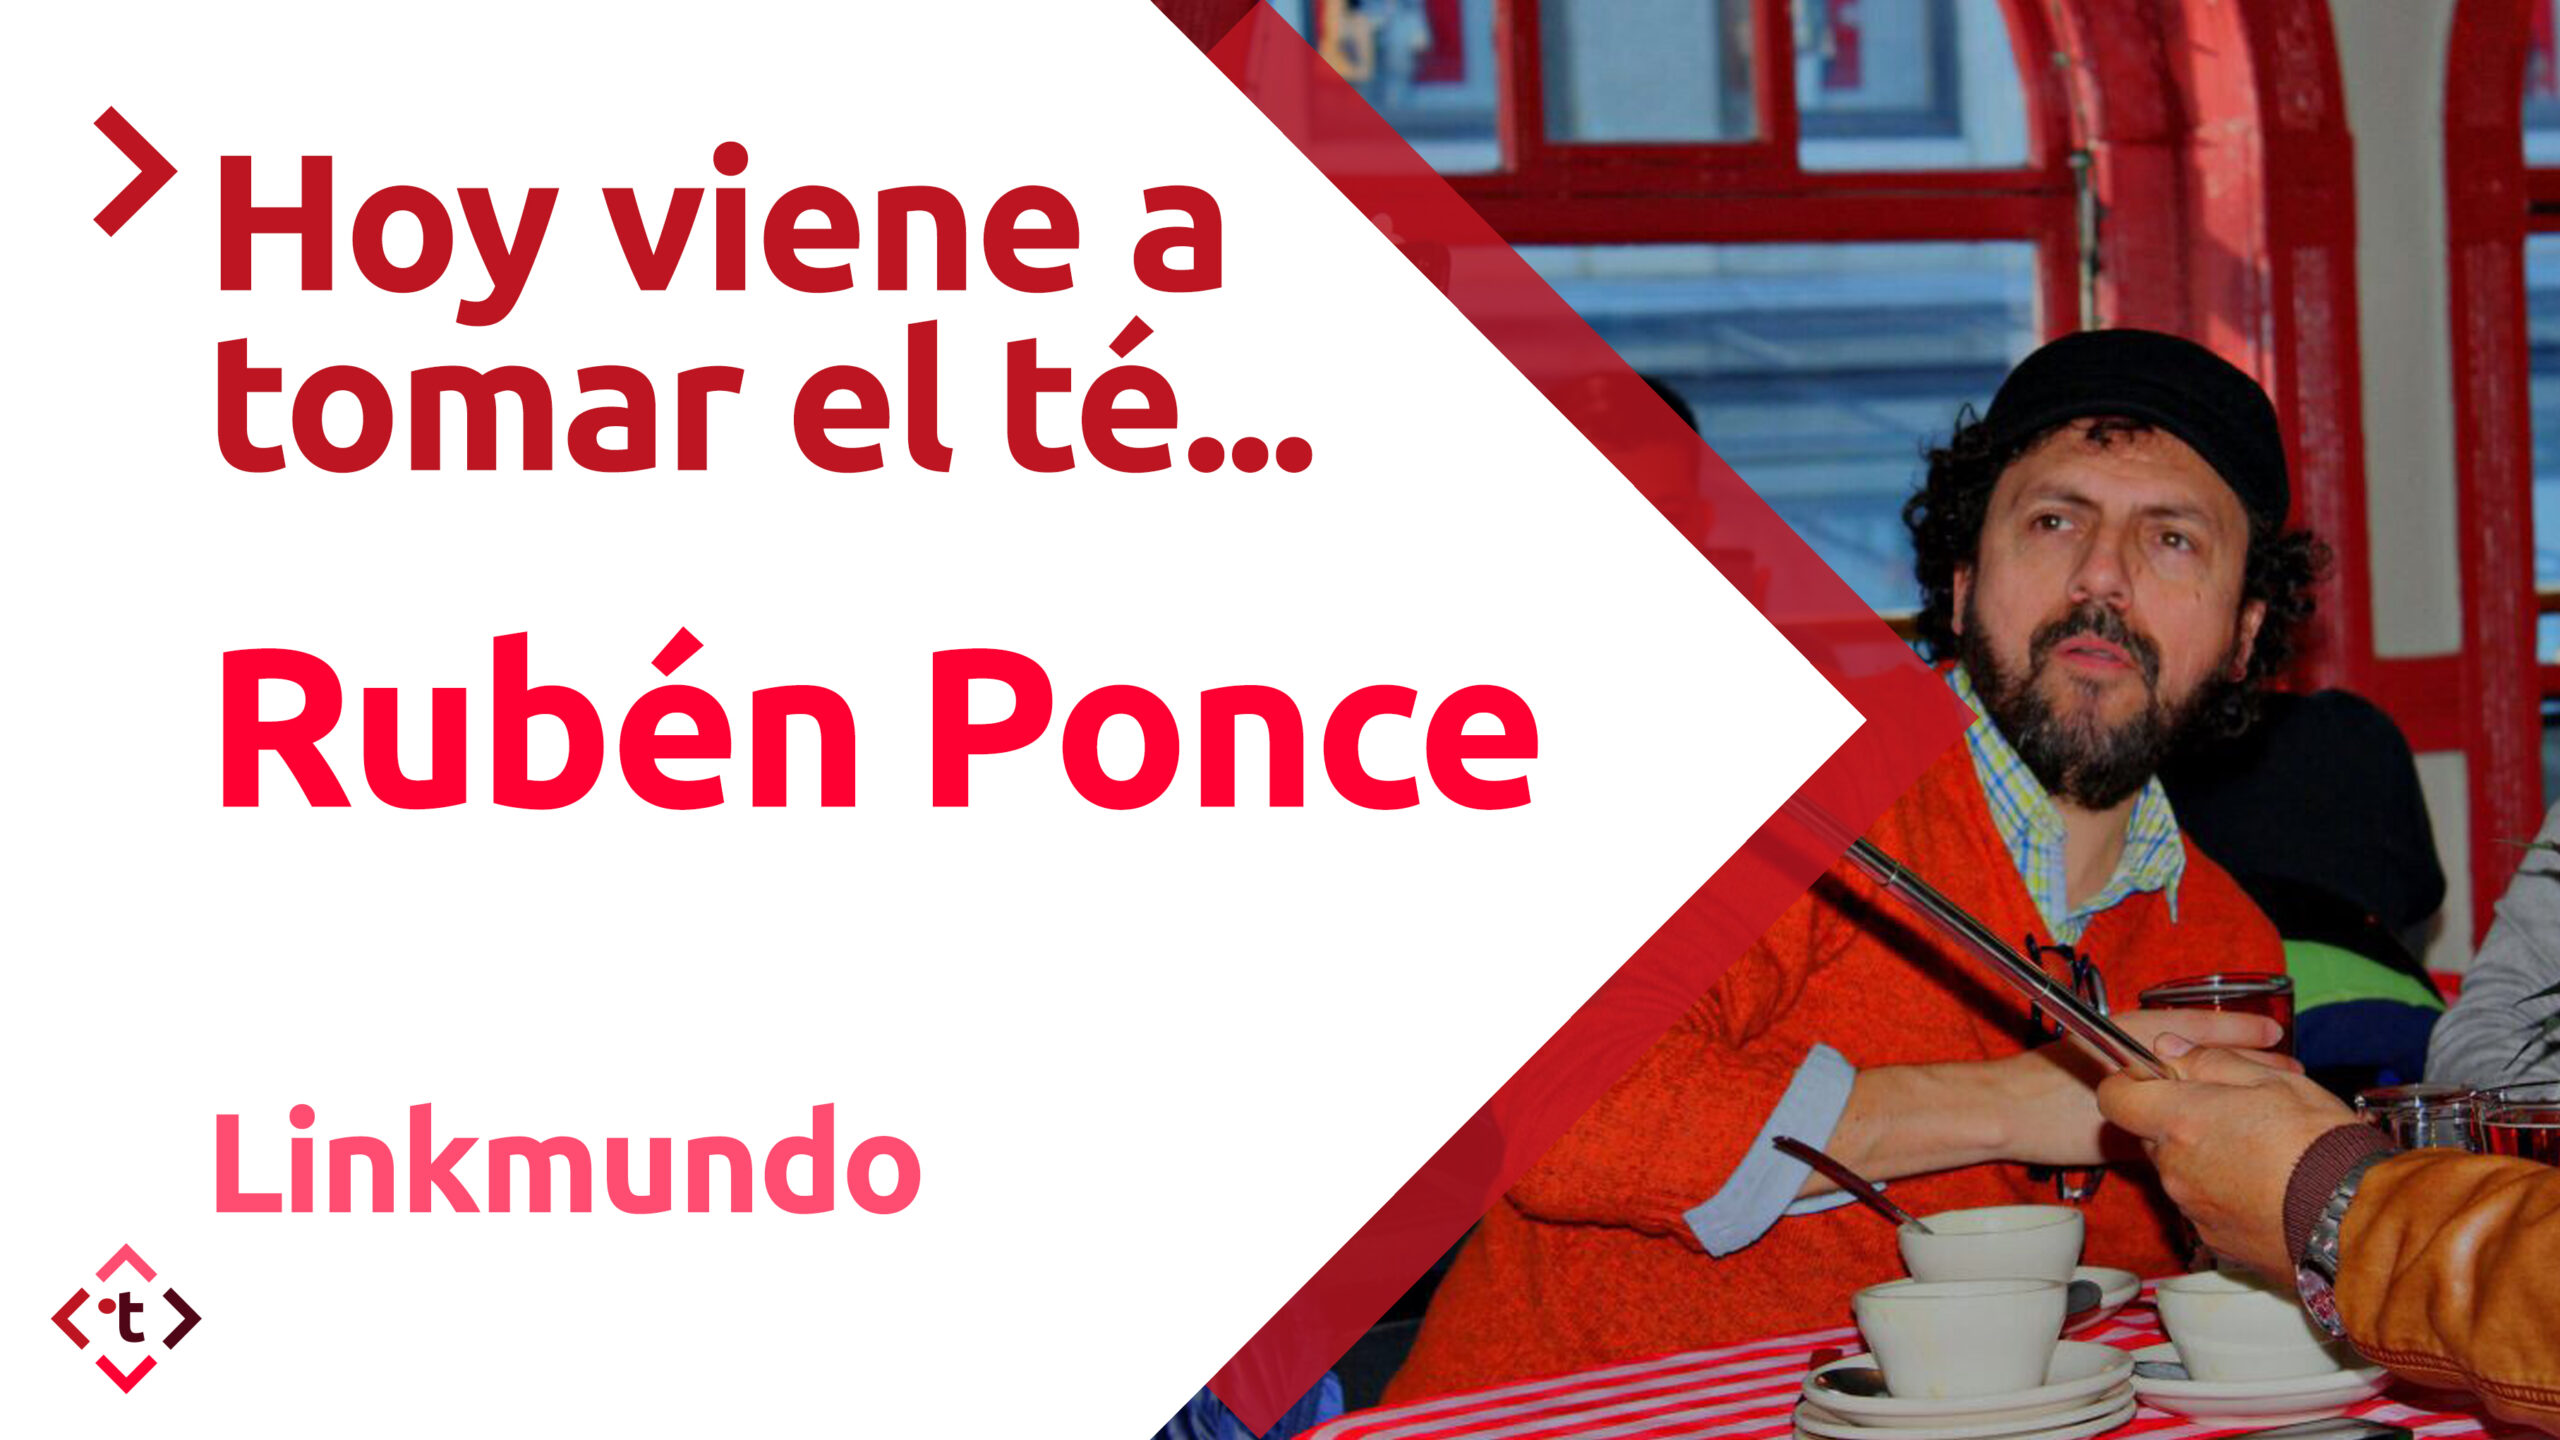 ·Rubén Ponce